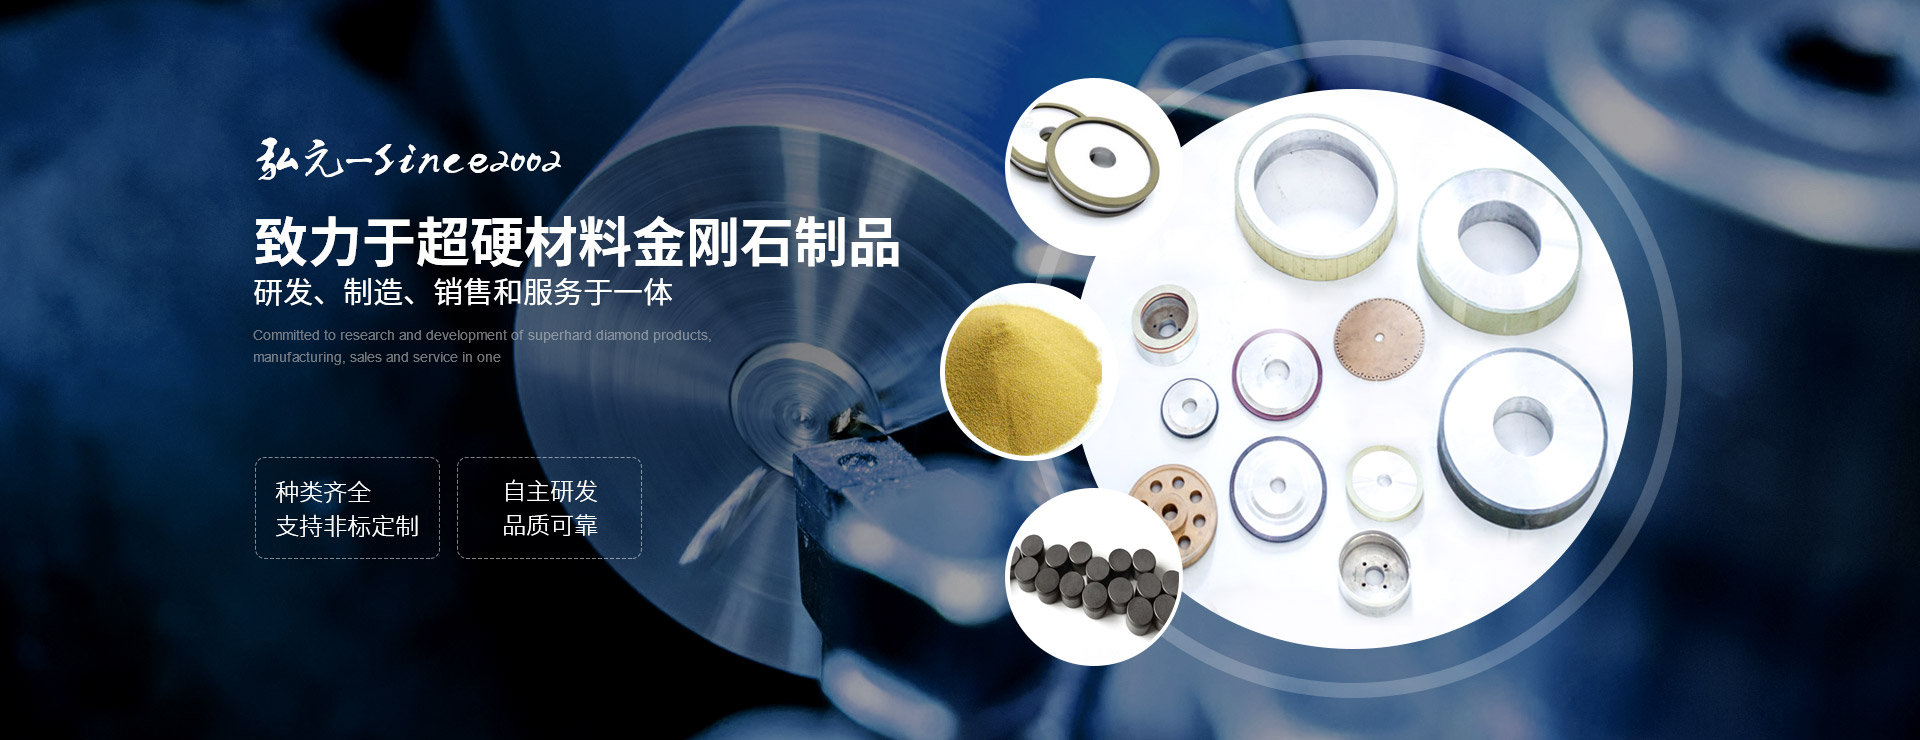 弘元致力于超硬材料金刚石制品的研发、制造、销售和服务